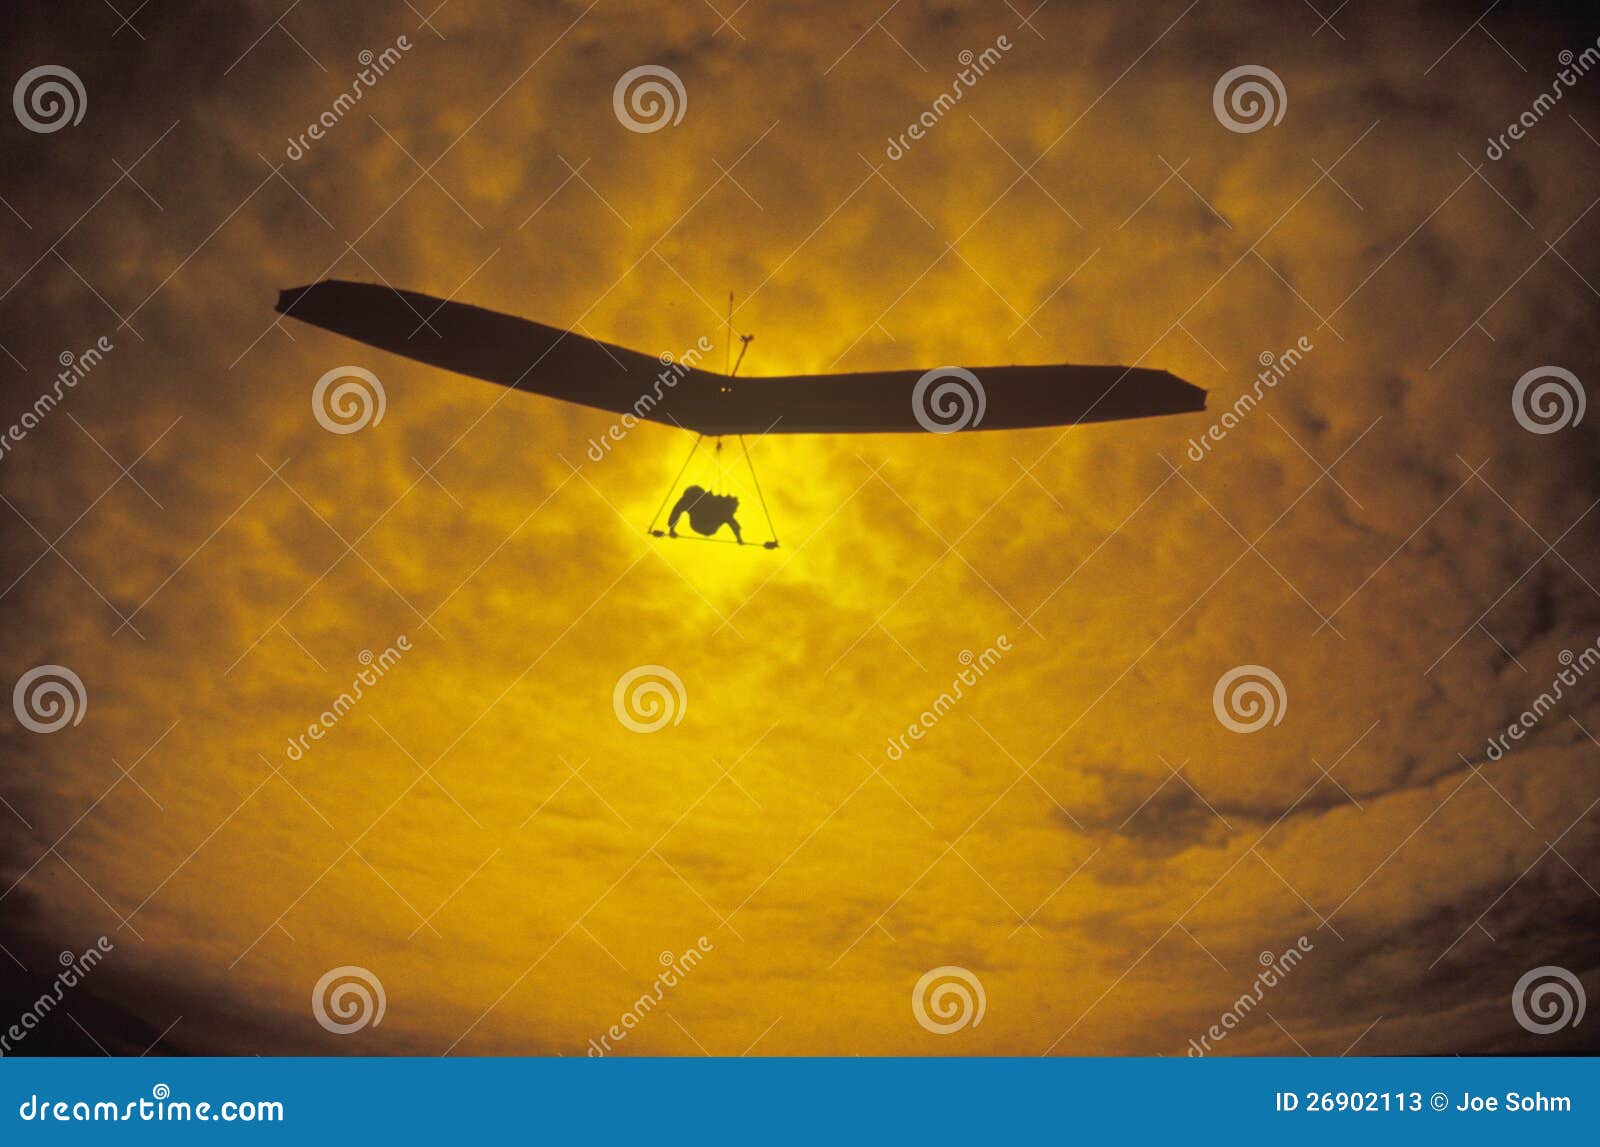 solar sailing hang gliding